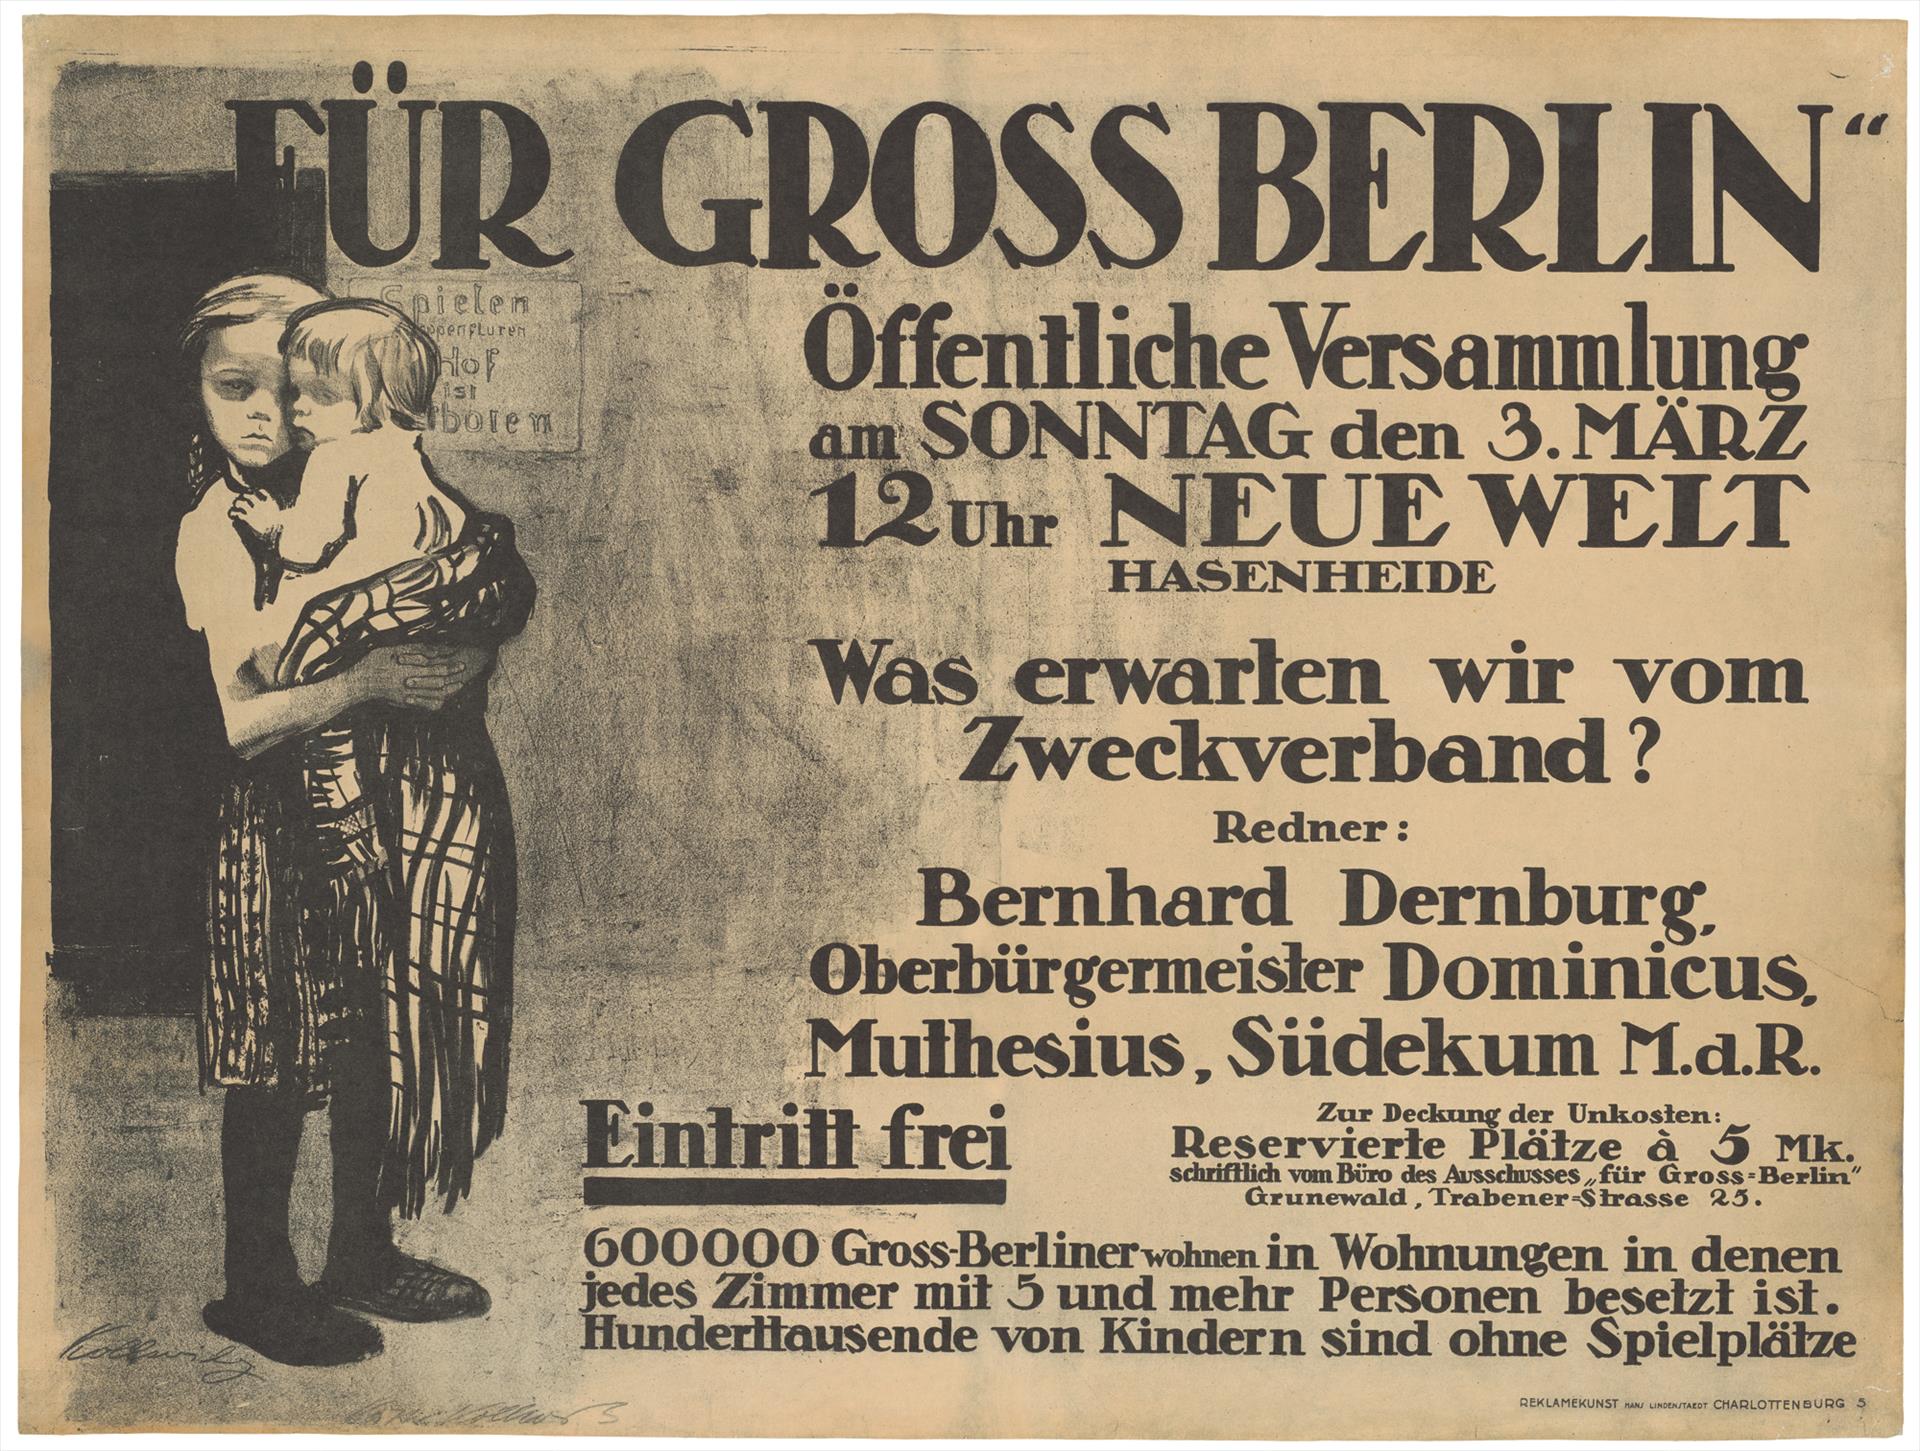 Käthe Kollwitz, affiche »Pour le grand Berlin«, 1912, lithographie au crayon et au pinceau (report), Kn 122 I, Collection Kollwitz de Cologne © Käthe Kollwitz Museum Köln